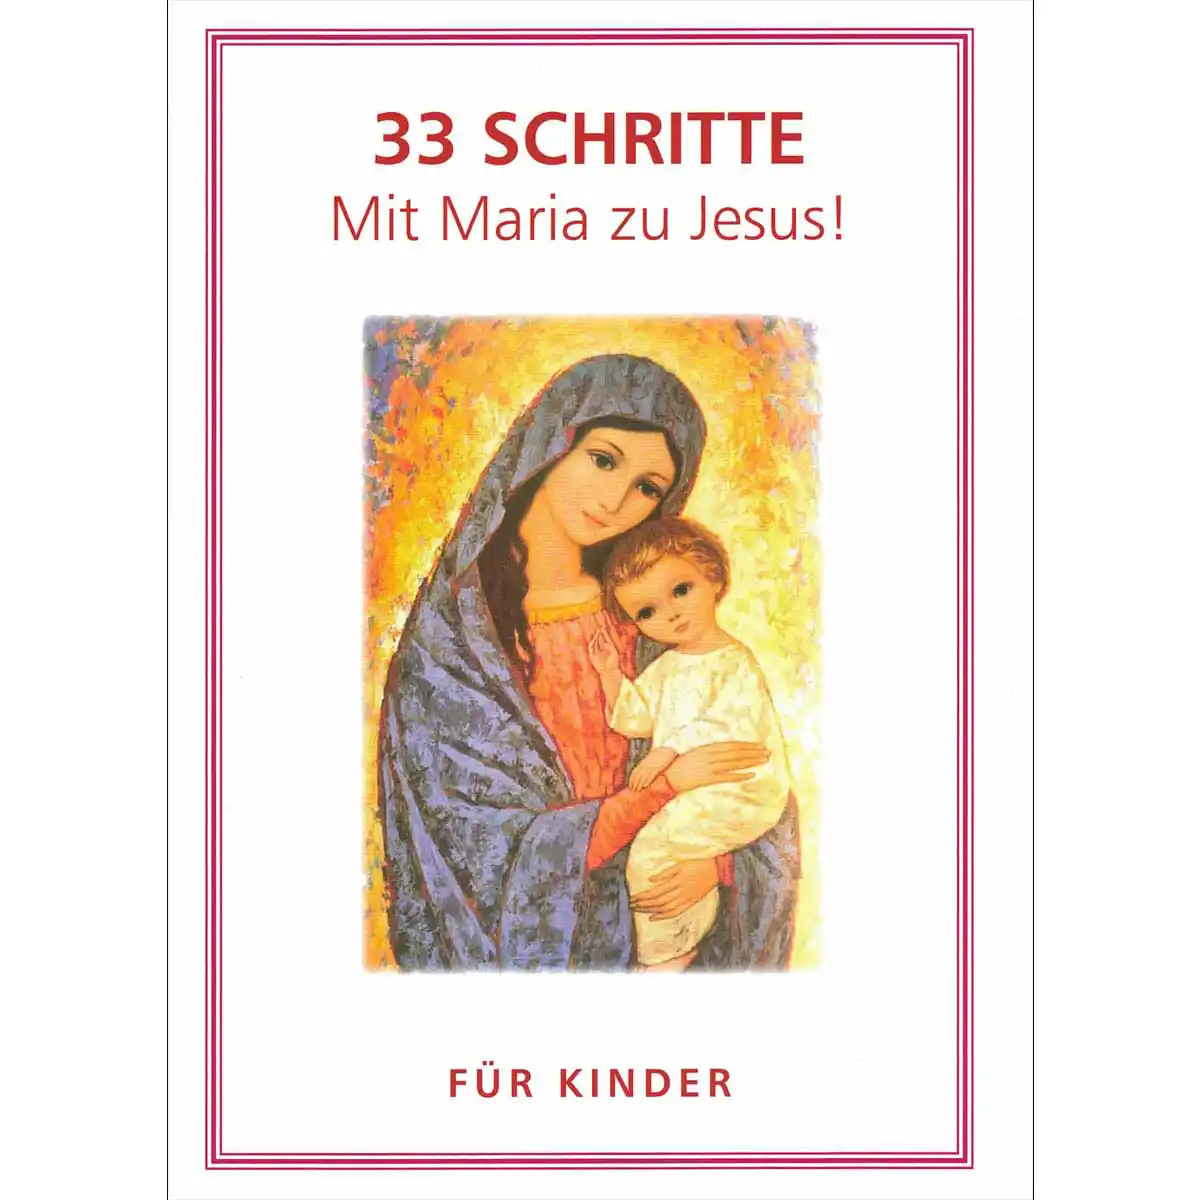 33 Schritte Mit Maria zu Jesu für Kinder Marienweihe